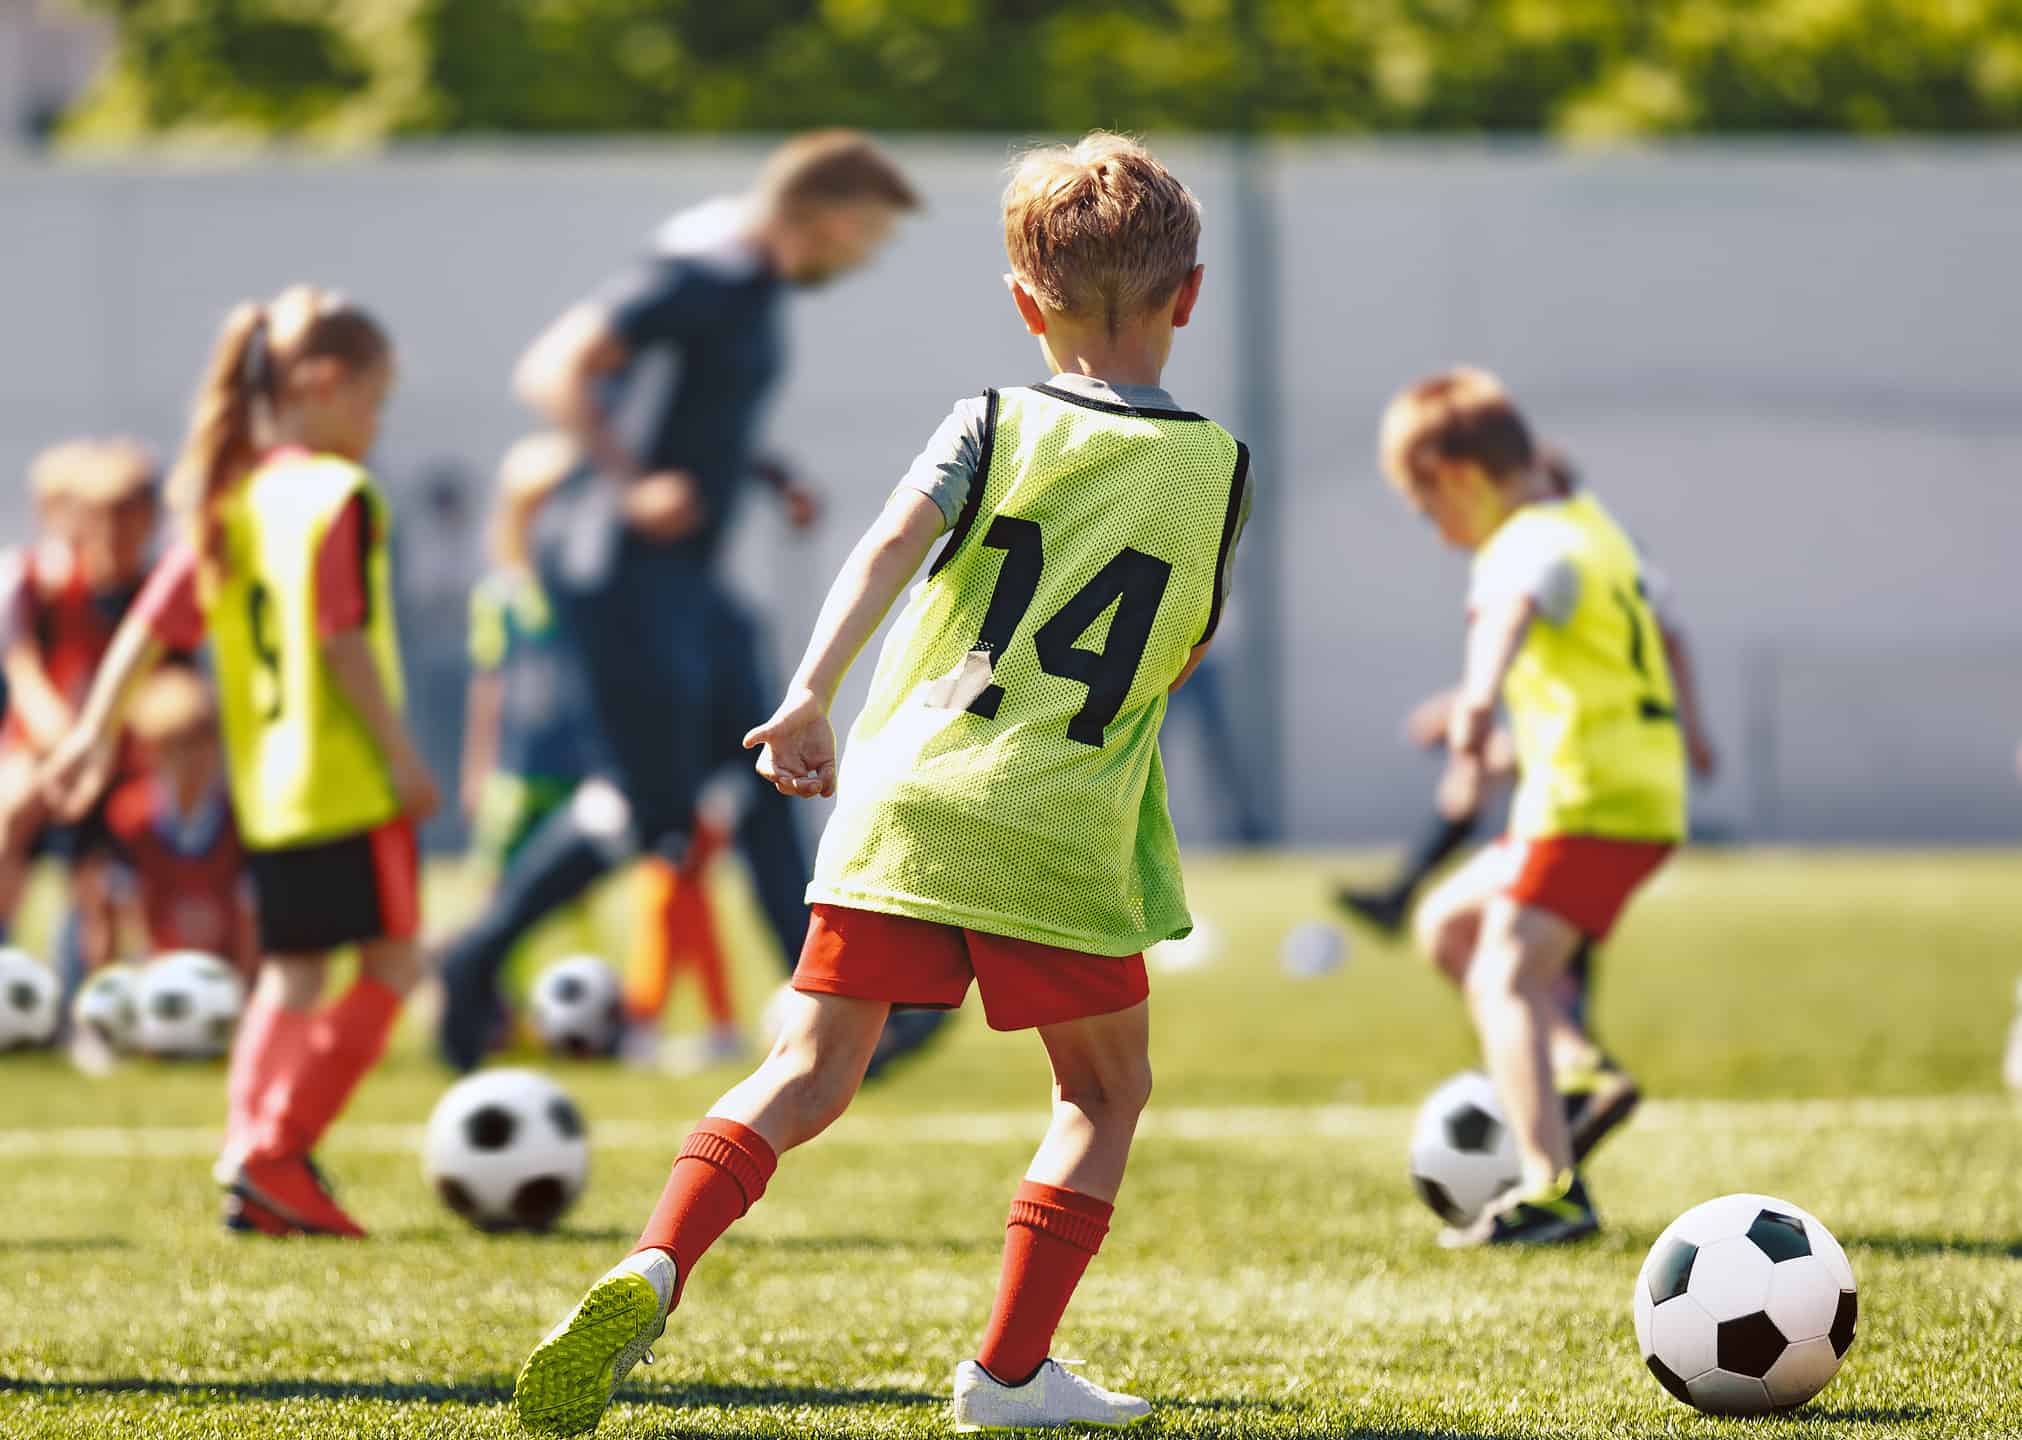 Elite Soccer Training Programmes & Football education for all